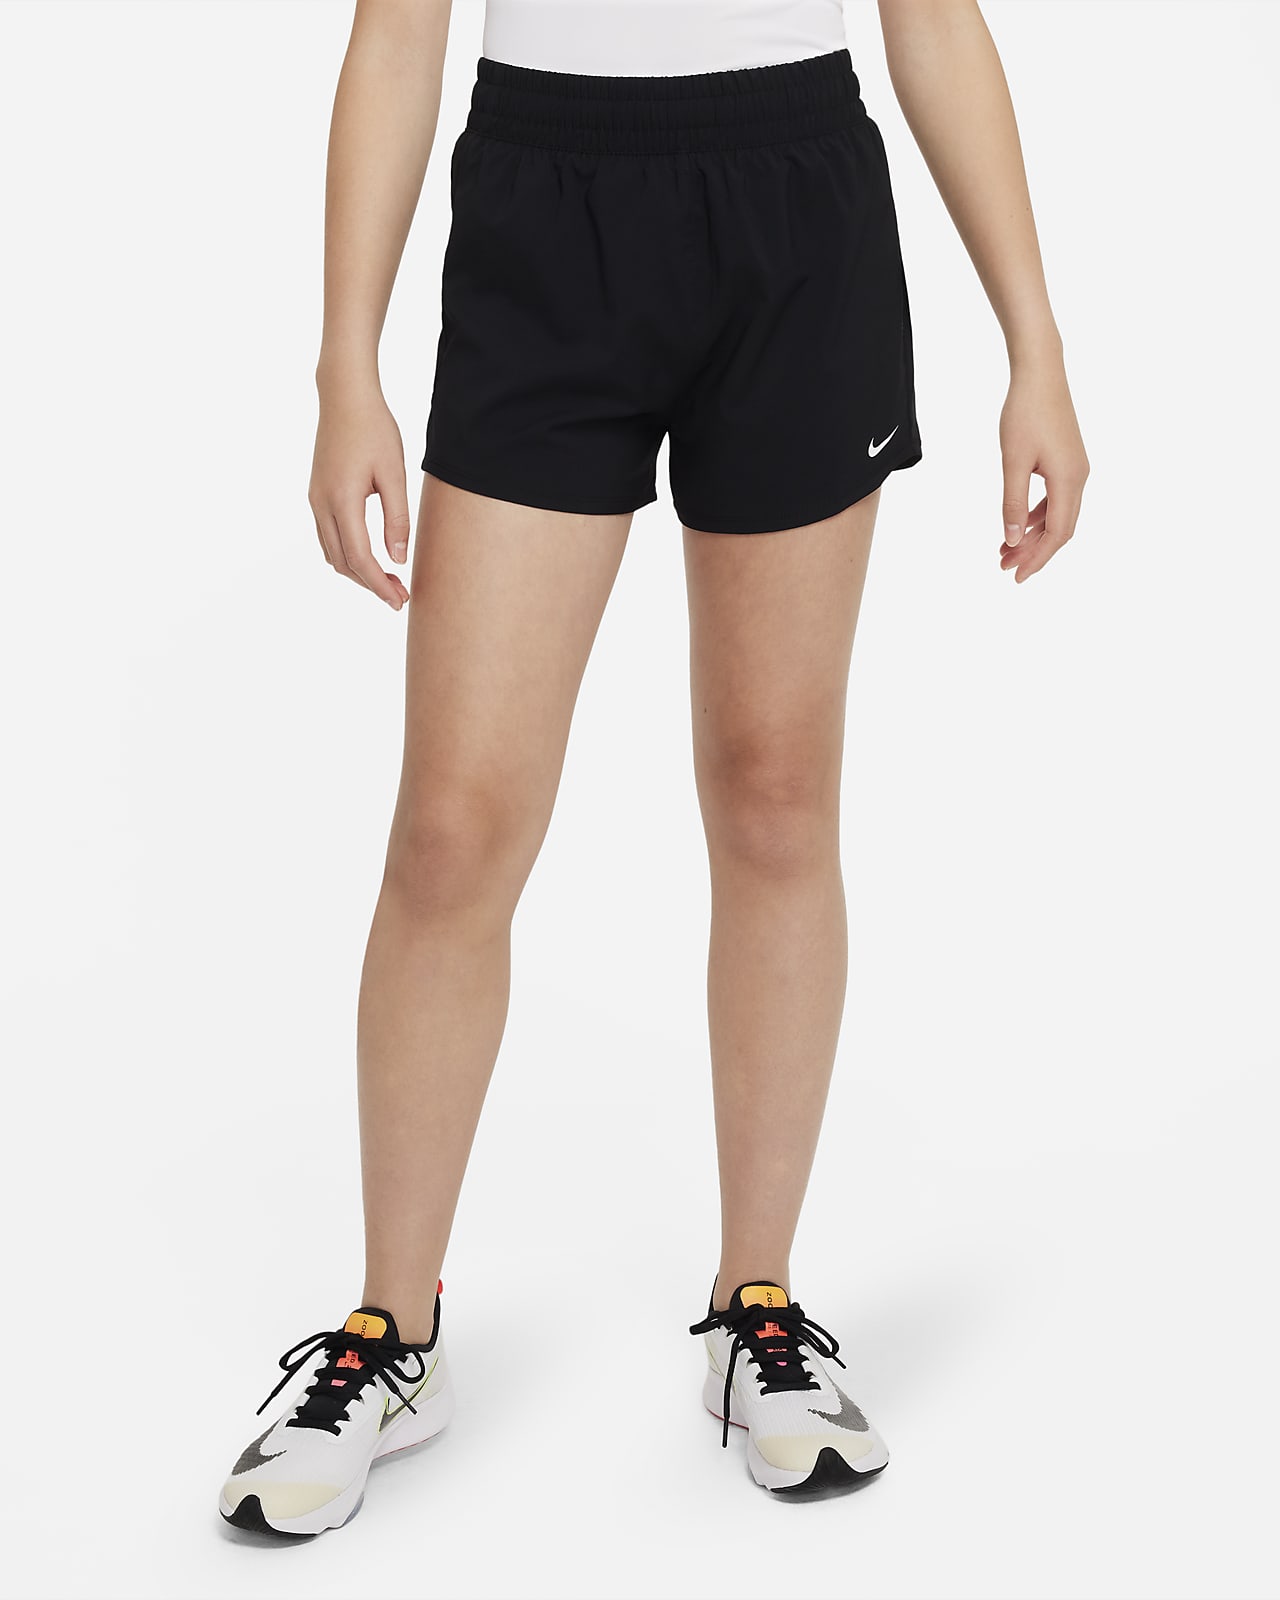 Nike One Dri-FIT Web-Trainingsshorts mit hohem Bund für ältere Kinder (Mädchen)